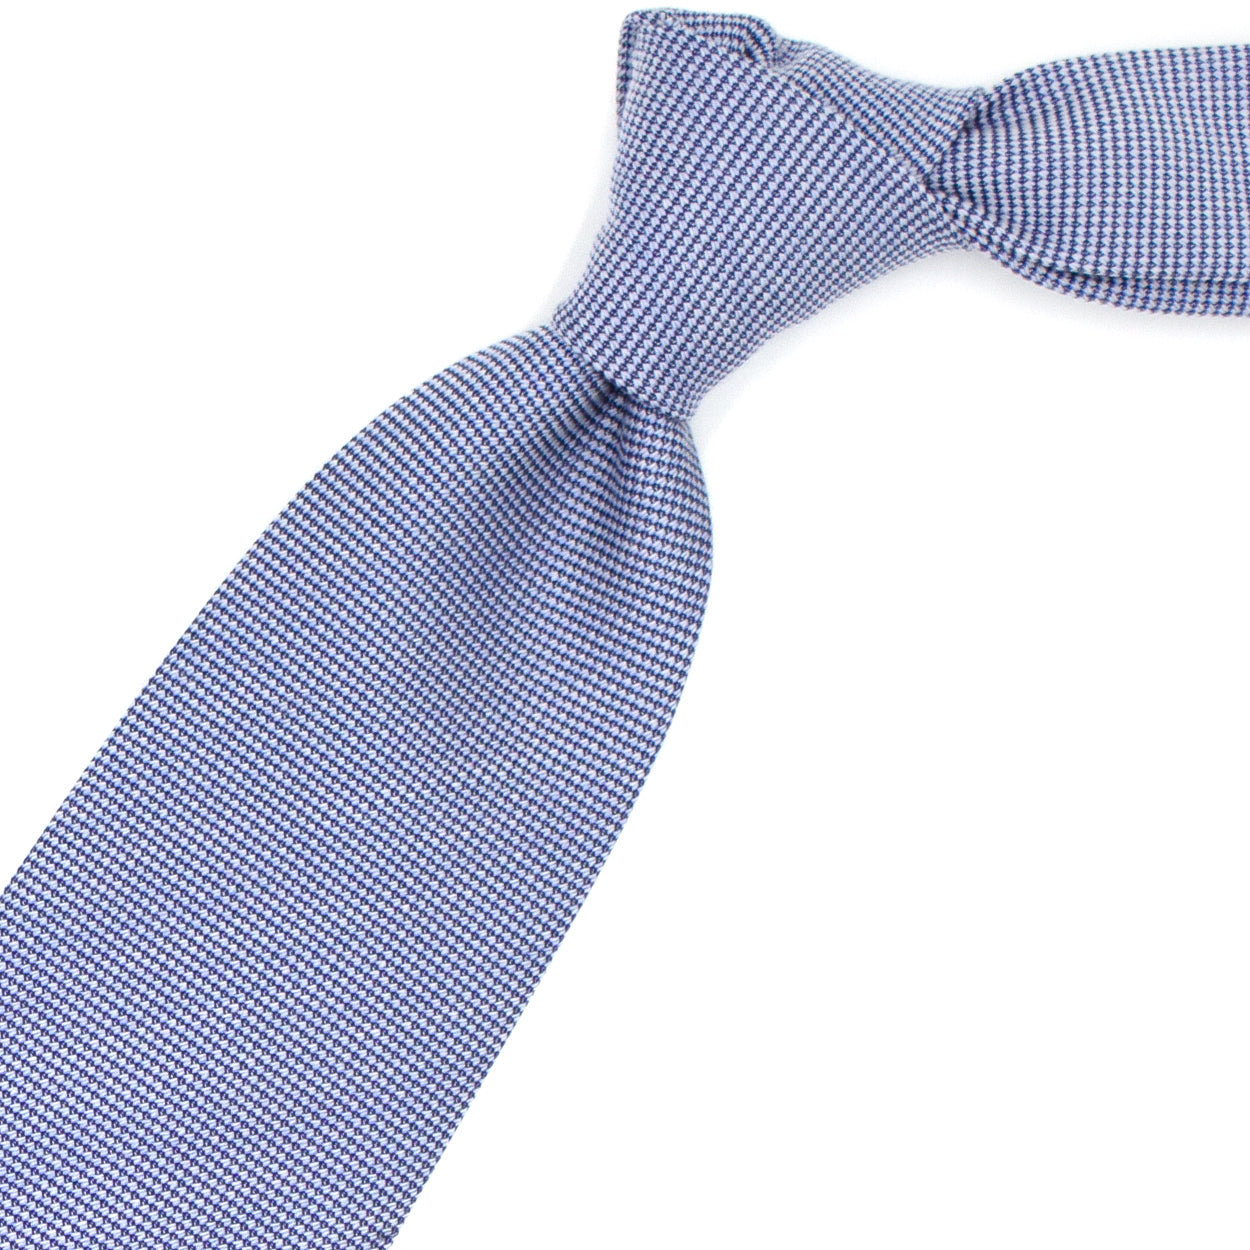 Cravatta tramata blu e bianca